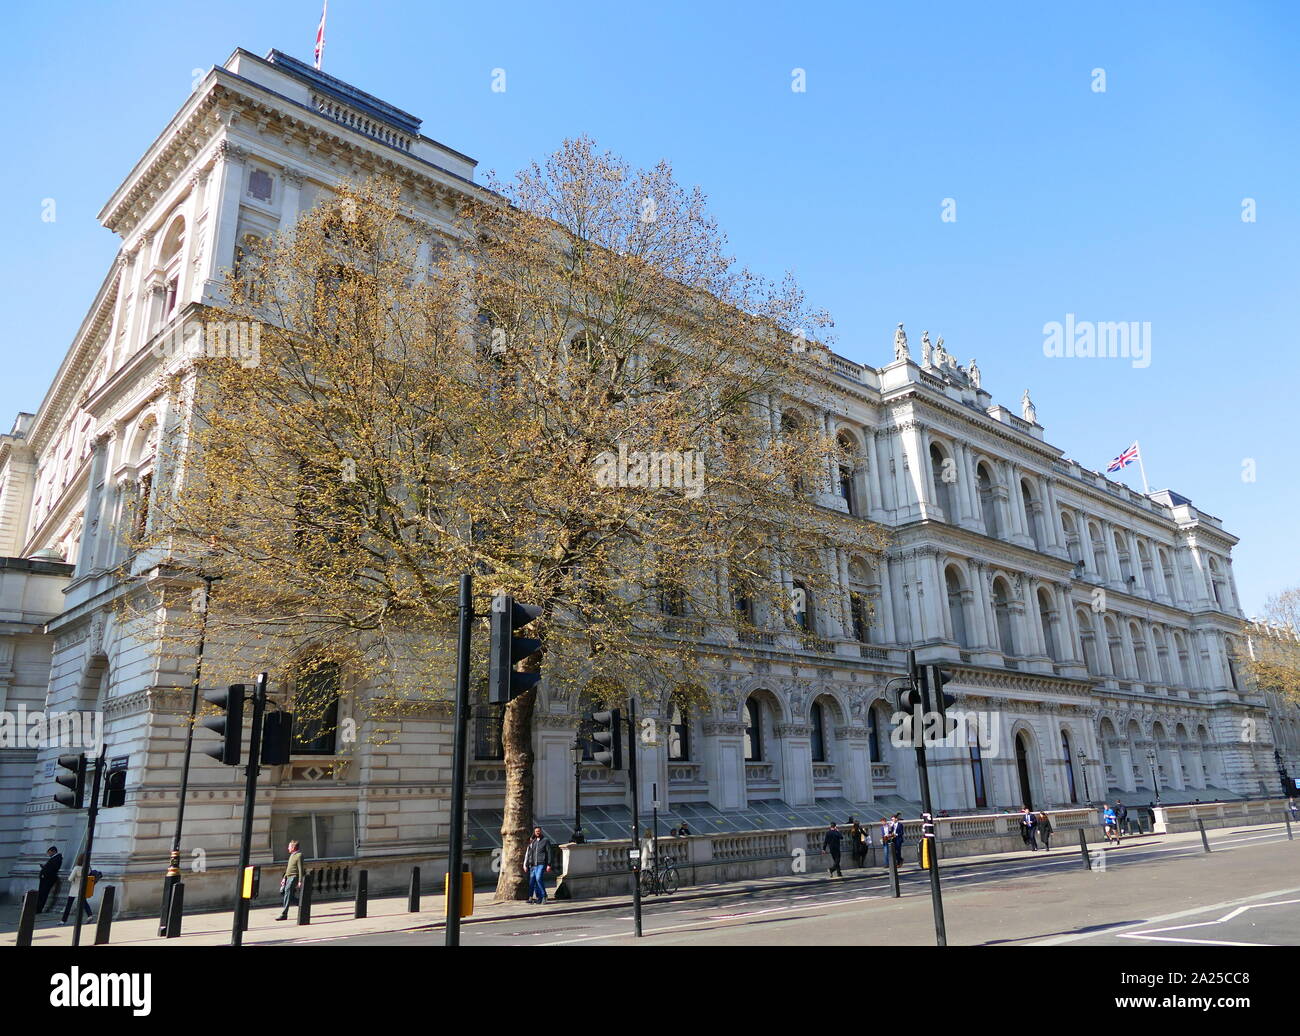 Il Foreign and Commonwealth Office (FCO), comunemente chiamato il Foreign Office, è un dipartimento del governo del Regno Unito. Essa è responsabile per la protezione e la promozione degli interessi britannici in tutto il mondo Foto Stock